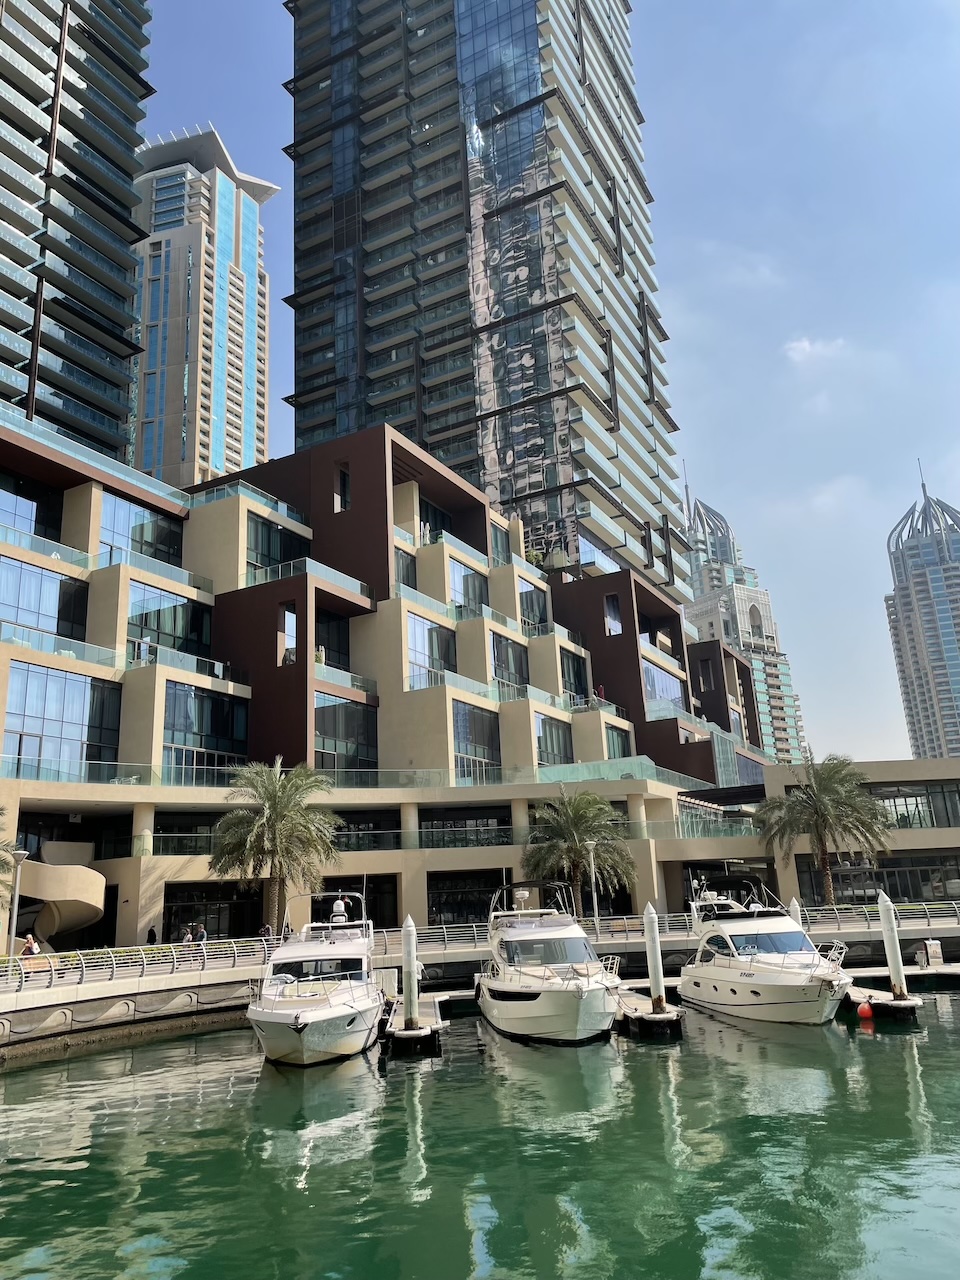 Alquiler de yates en la Marina de Dubái: Un viaje envuelto en lujo